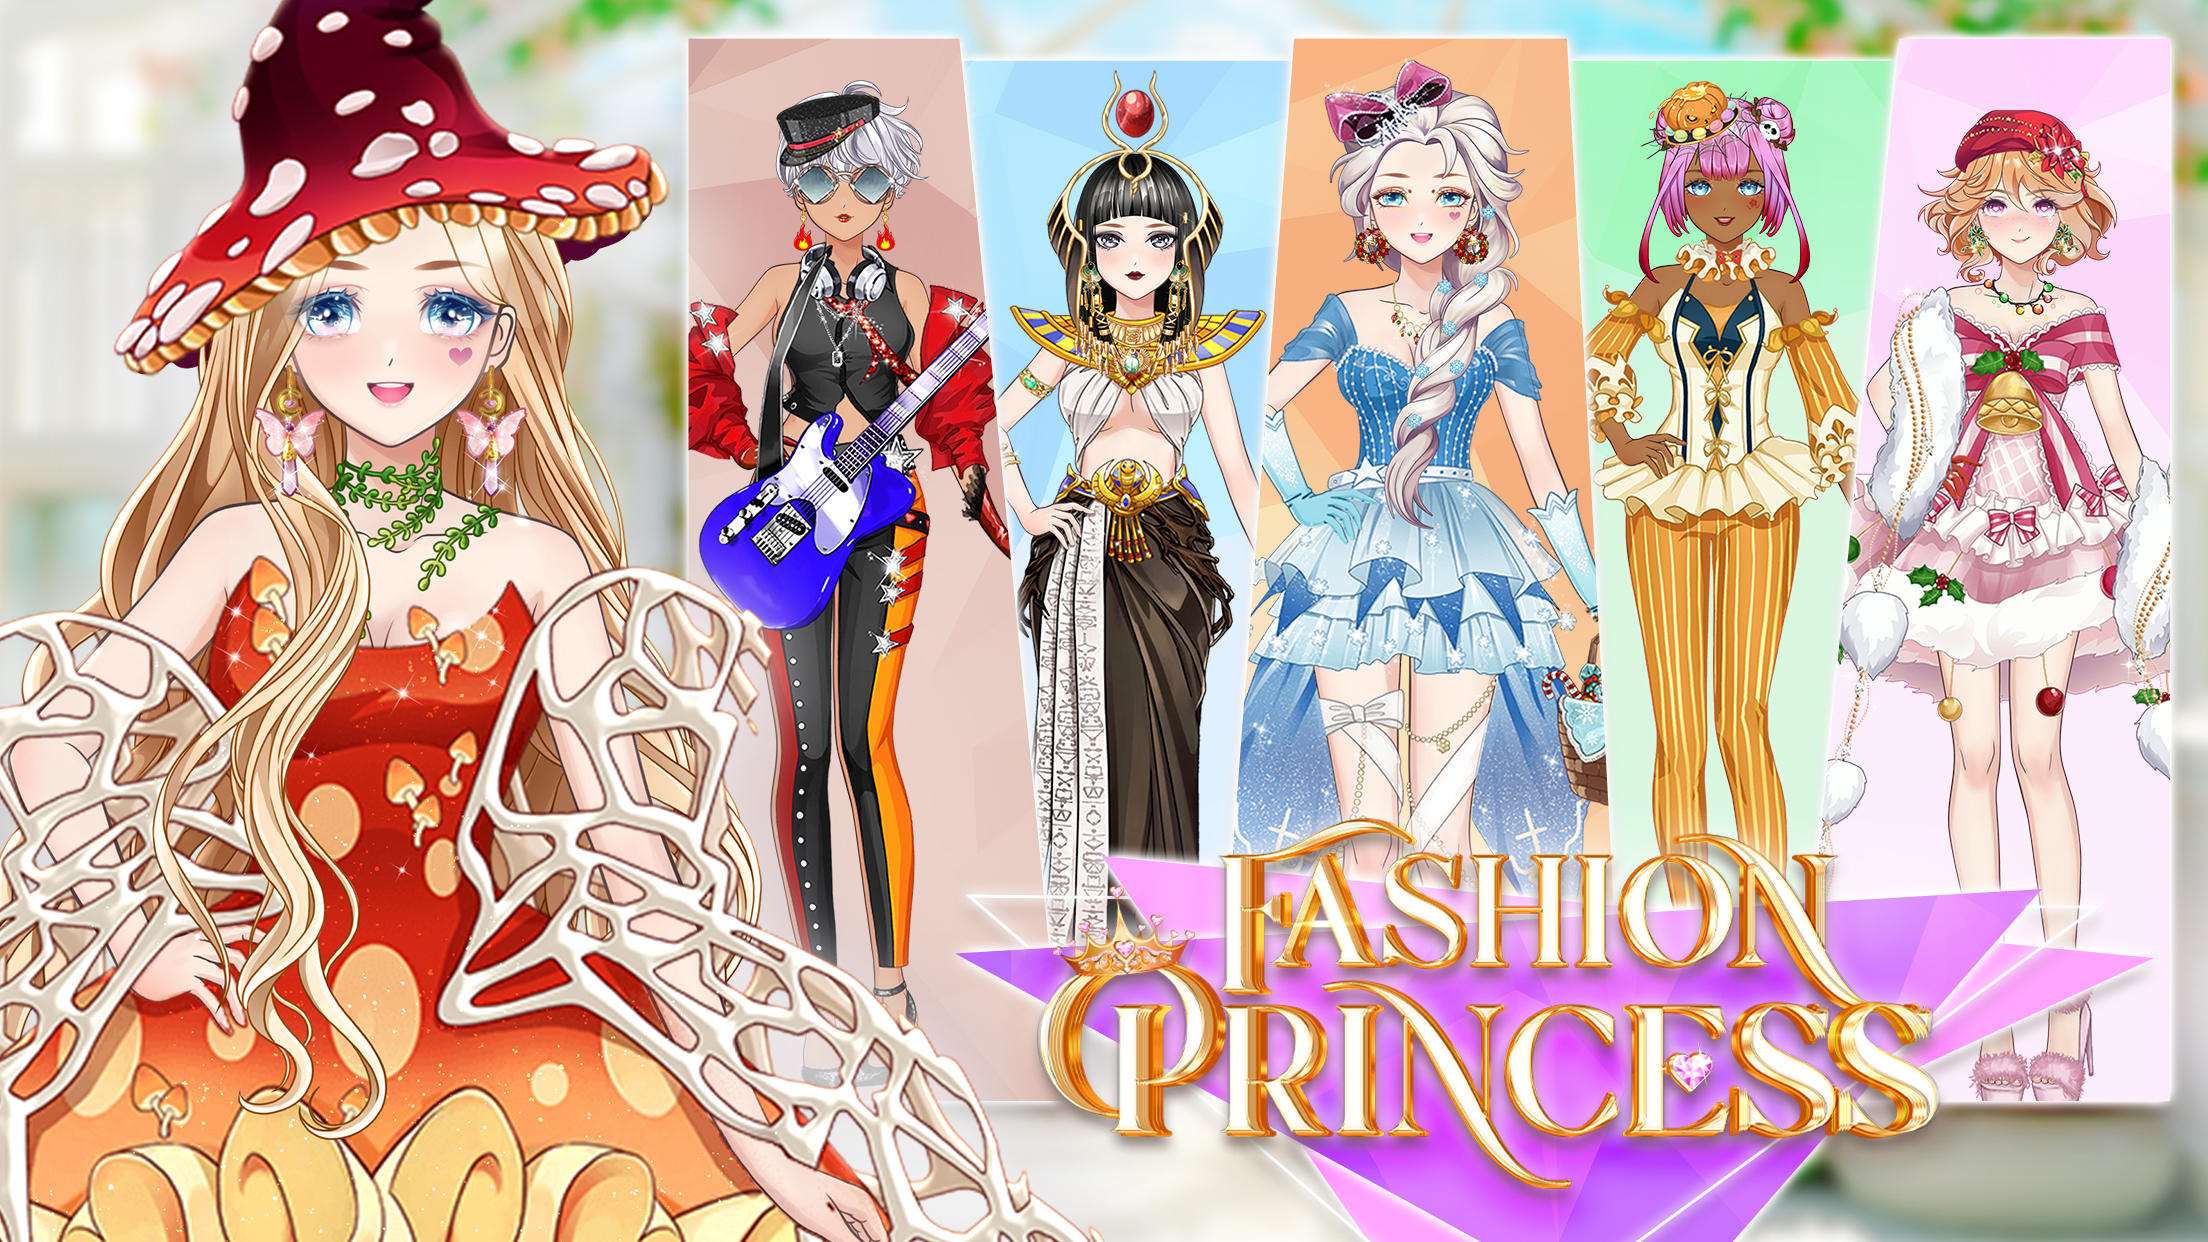 Fashion Princess for Nintendo Switch - Nintendo Official Site